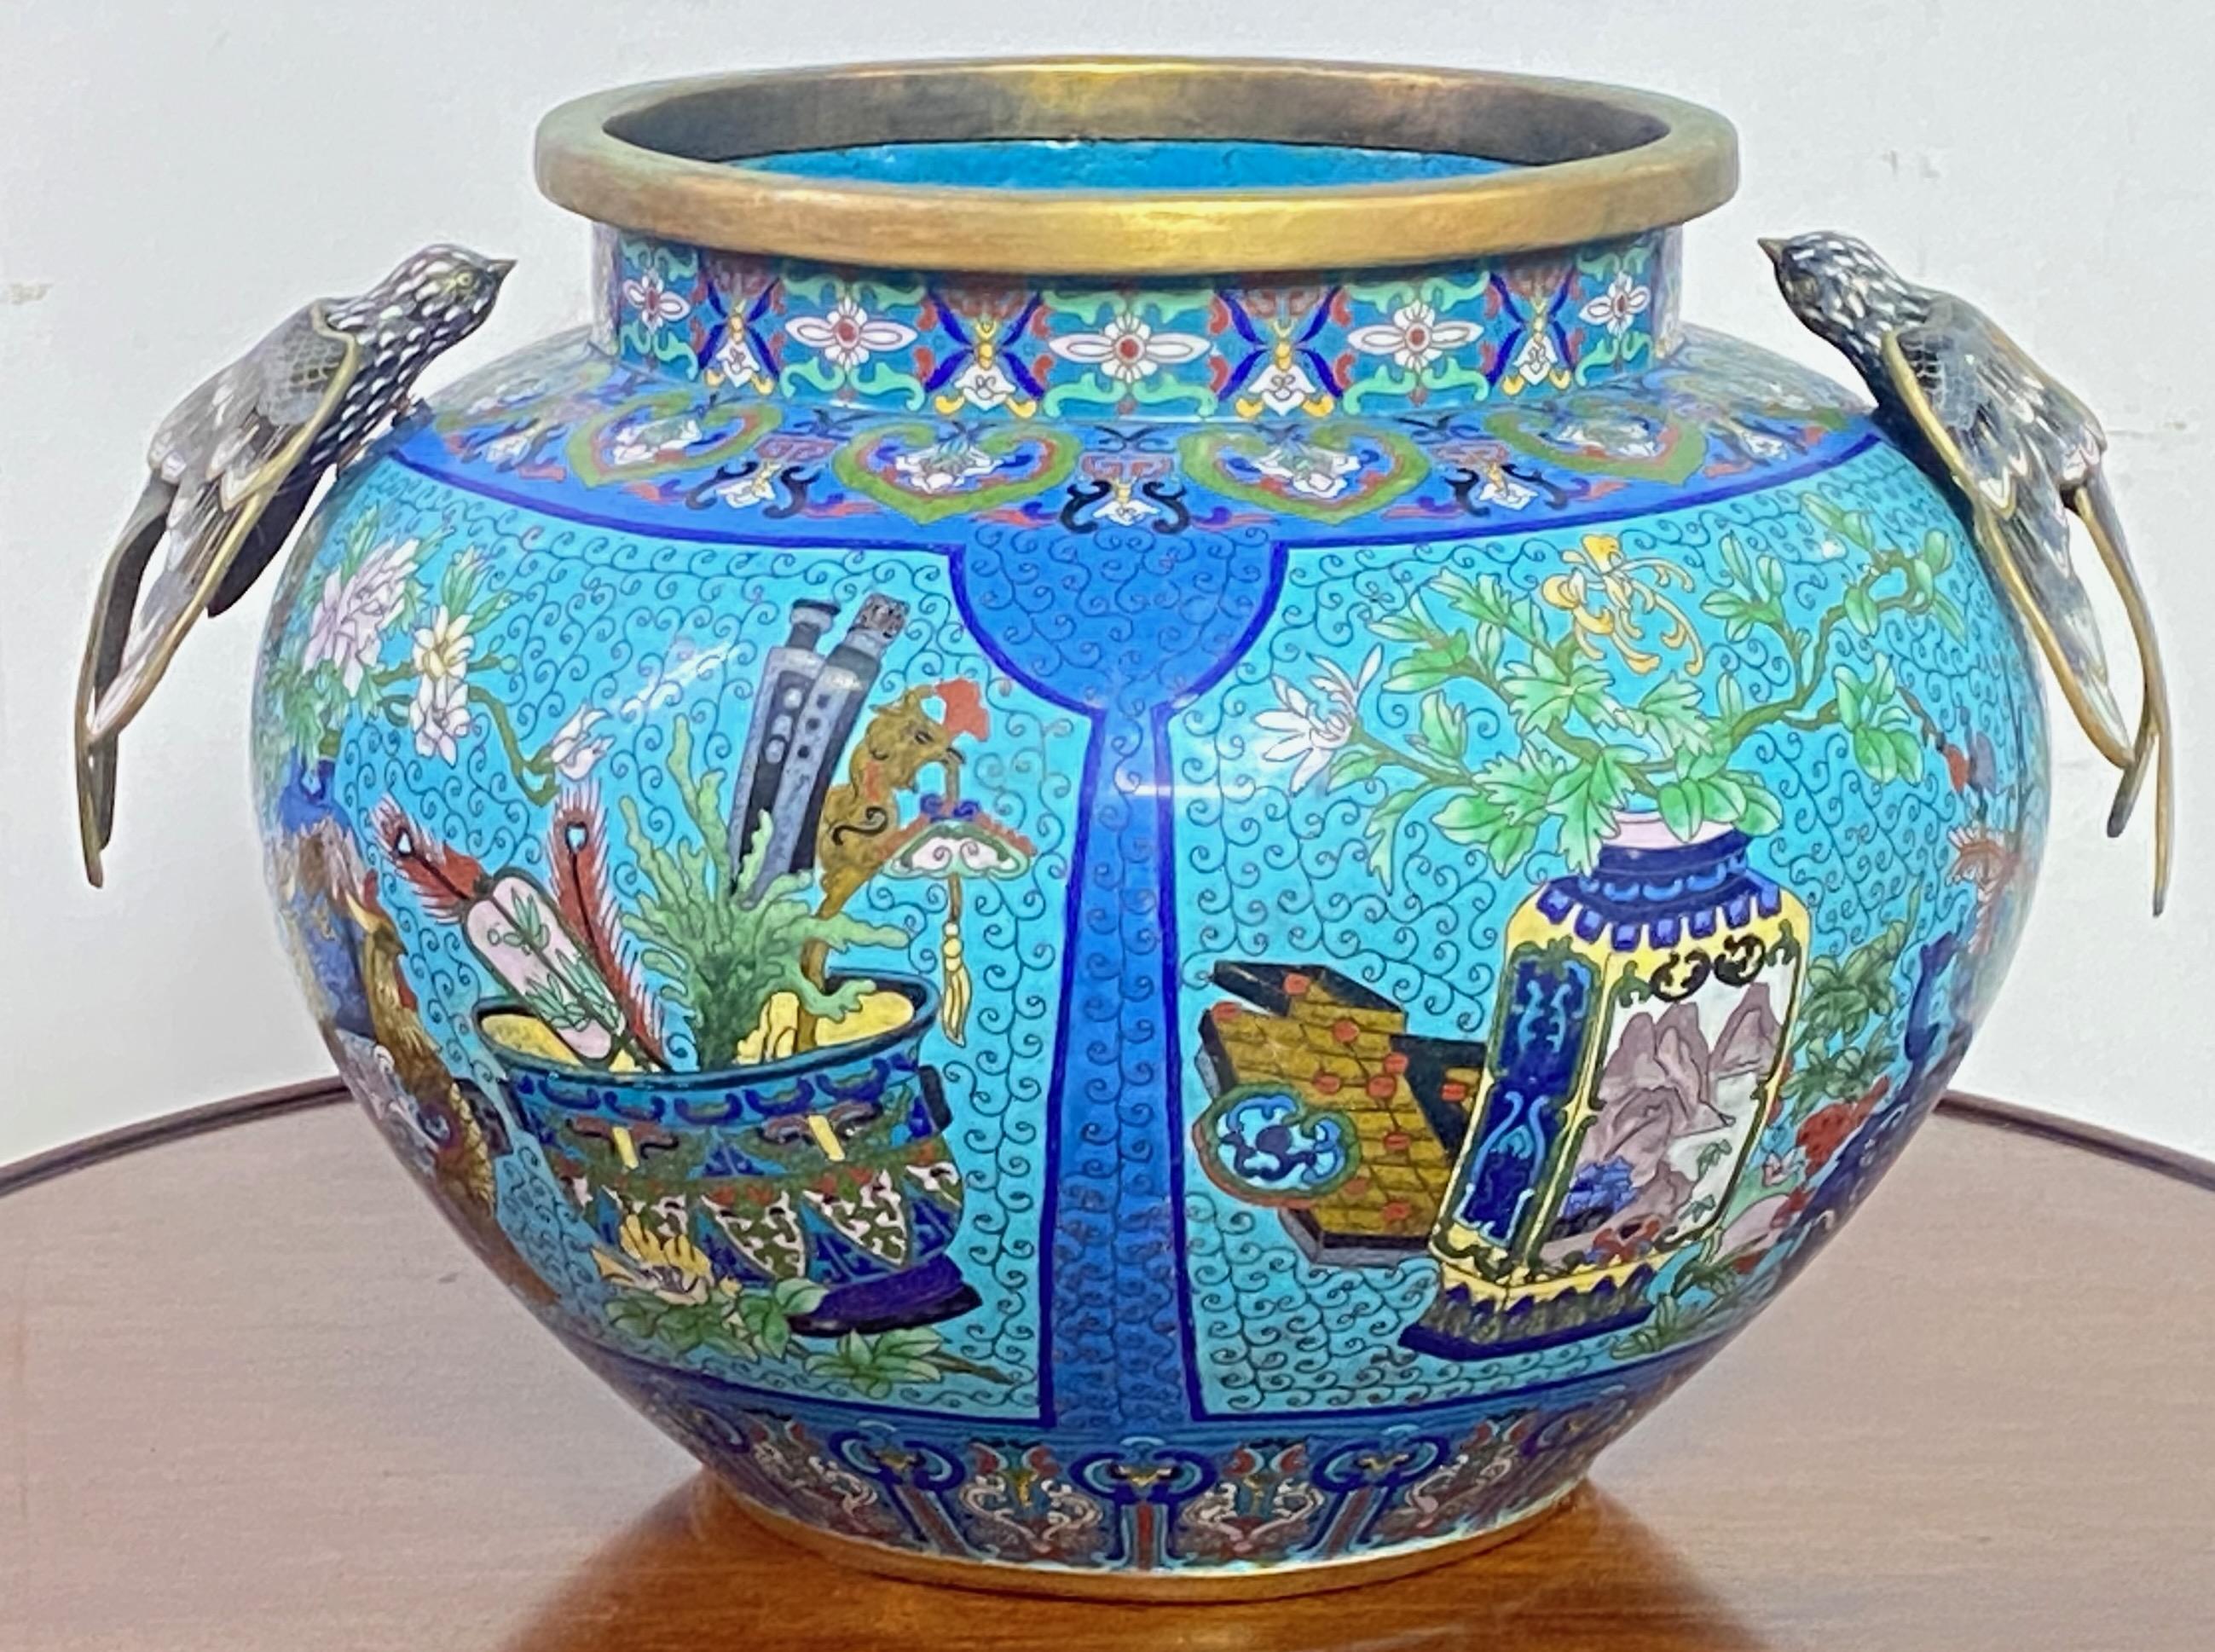 Un grand pot ou urne en cloisonné chinois ancien exceptionnel. Il s'agit d'une œuvre d'art émaillée très détaillée, réalisée à la main, avec des fleurs et des motifs d'animaux autour du pot. Chaque épaule est ornée d'un magnifique oiseau en